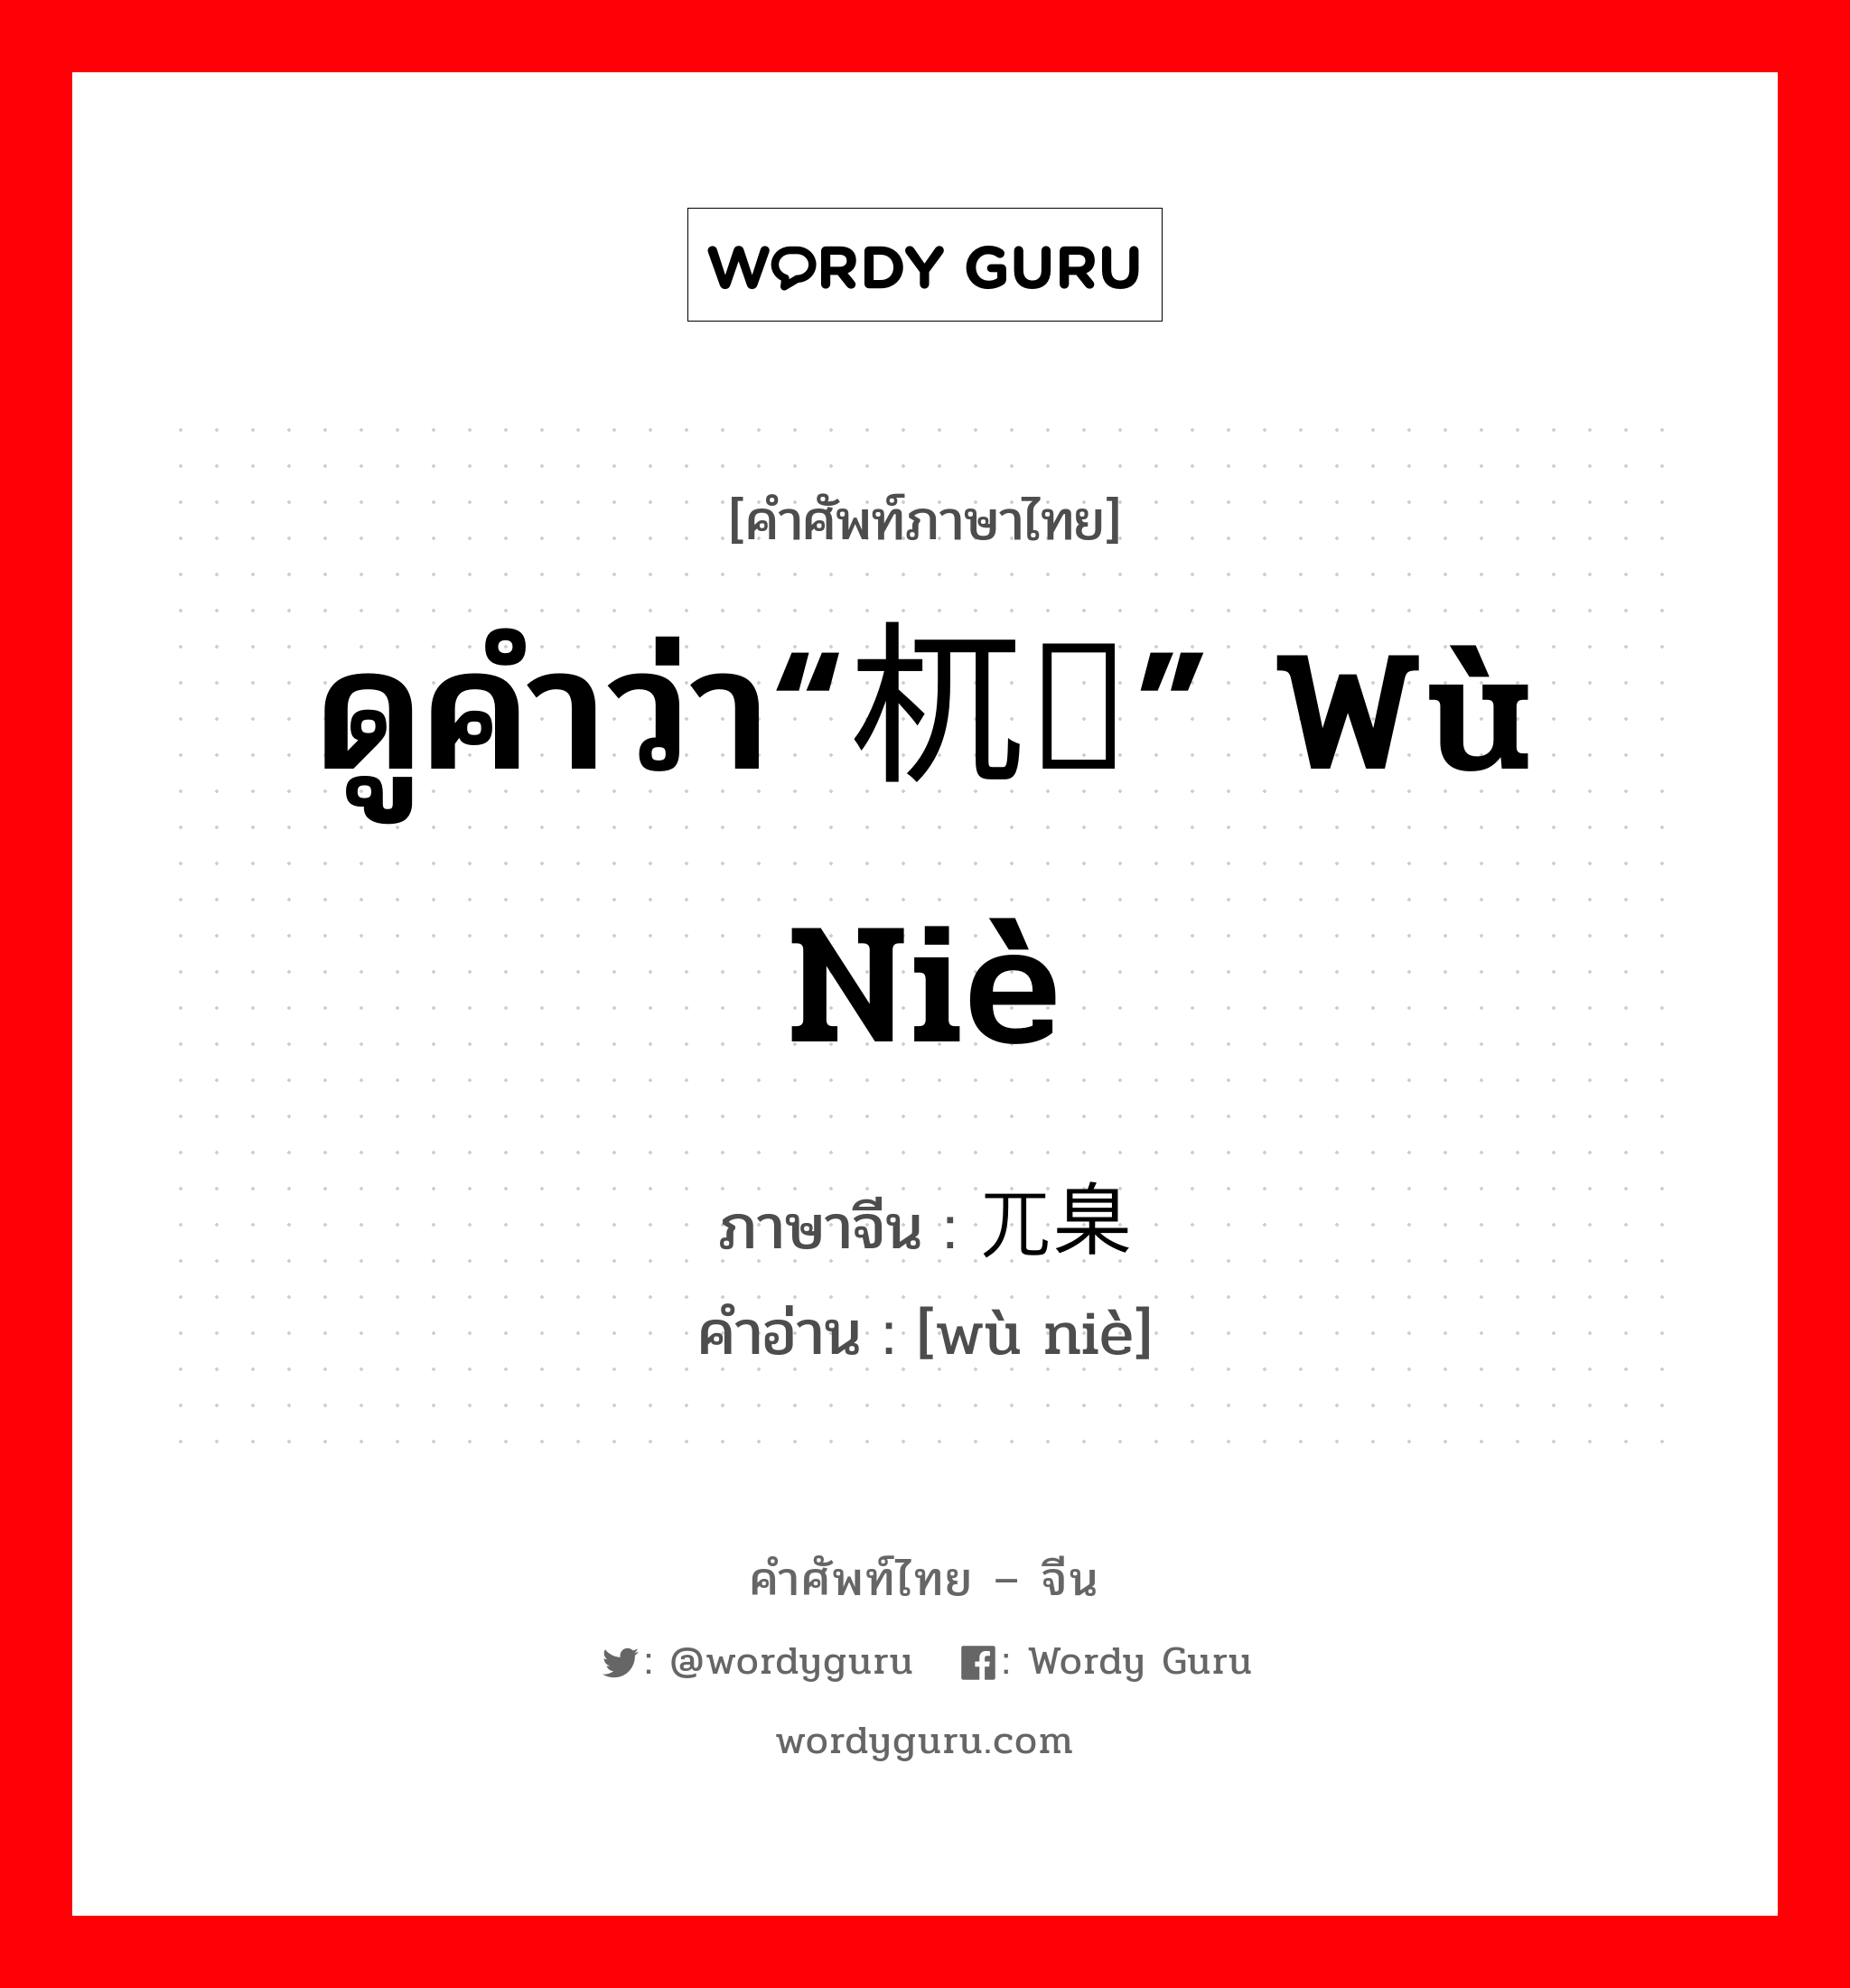 ดูคำว่า“杌陧” wù niè ภาษาจีนคืออะไร, คำศัพท์ภาษาไทย - จีน ดูคำว่า“杌陧” wù niè ภาษาจีน 兀臬 คำอ่าน [wù niè]